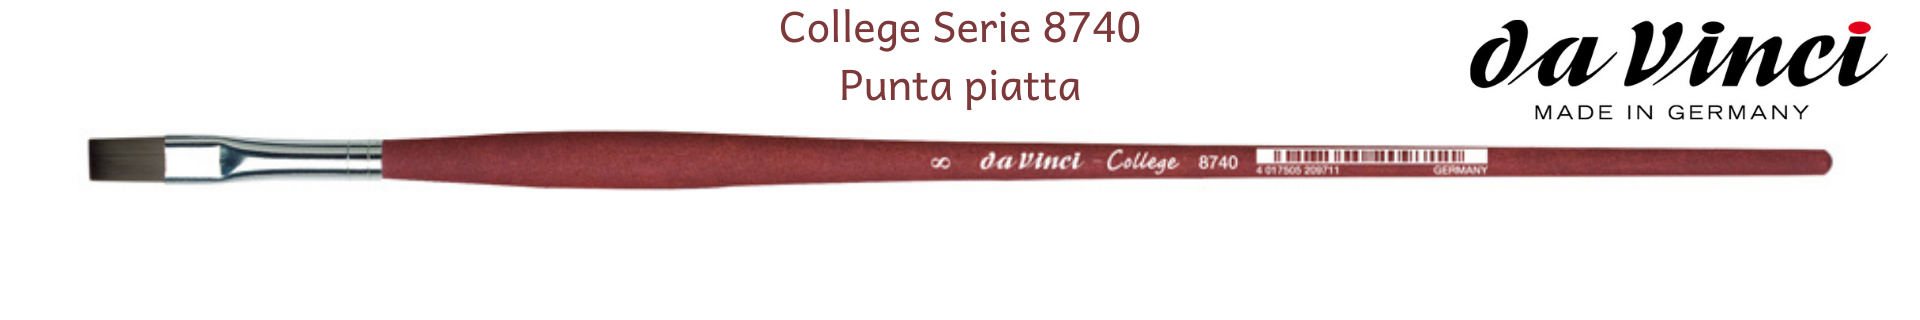 Pennelli Da Vinci COLLEGE 8740 Piatto